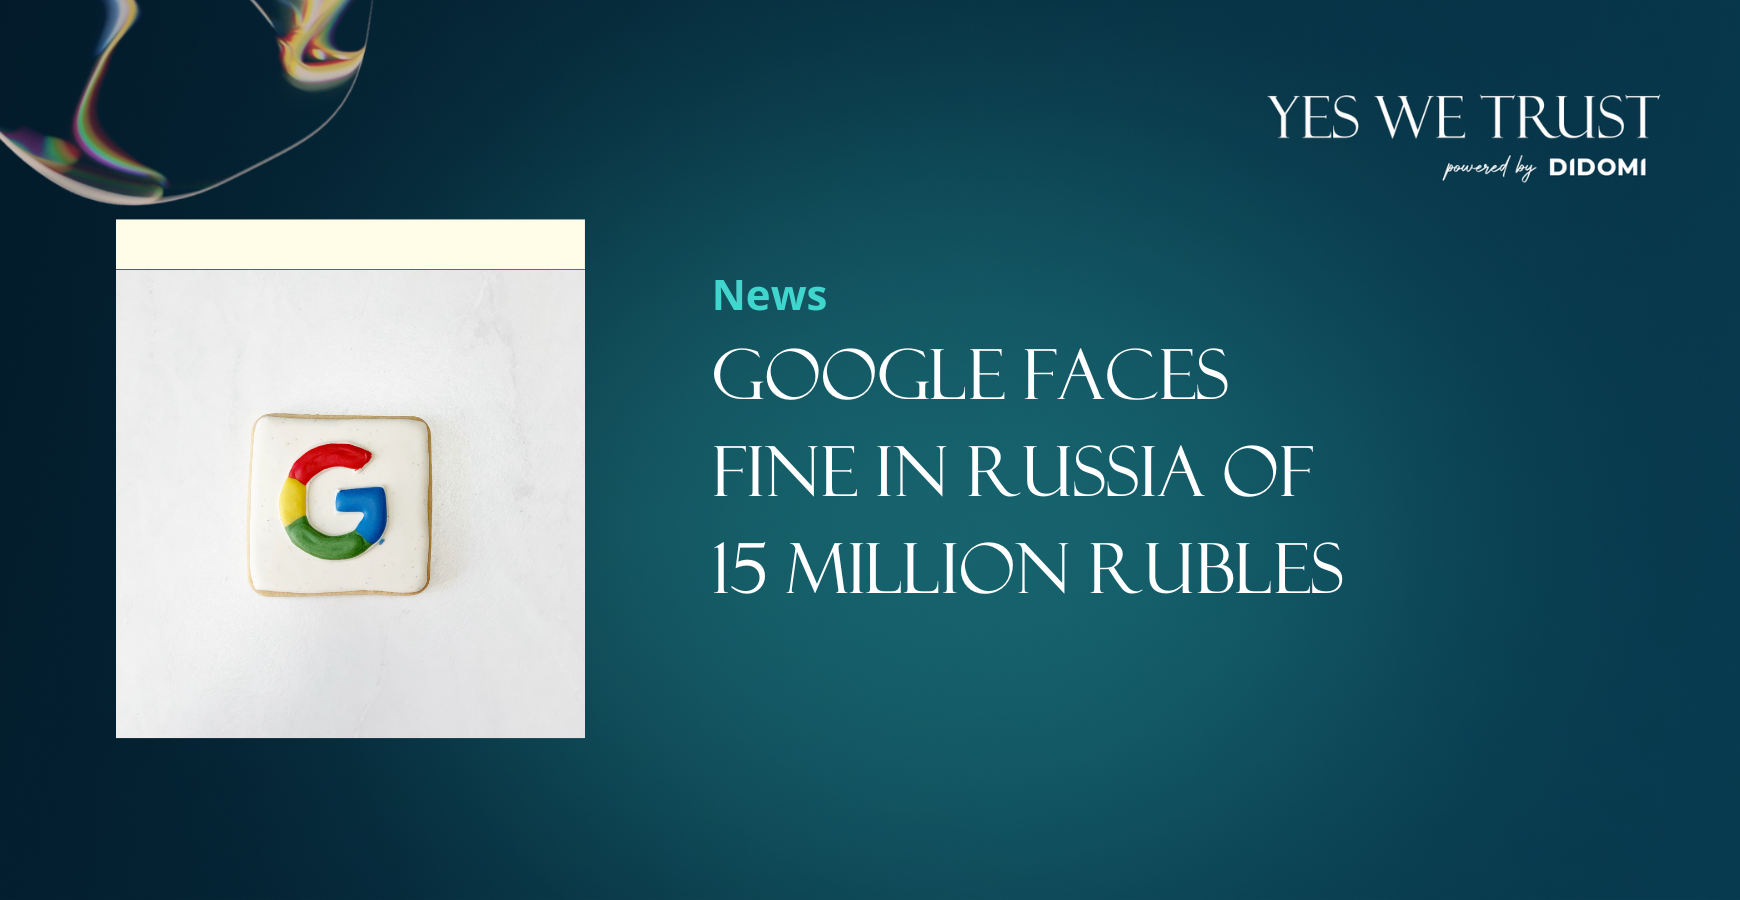 Google faces fine in Russia of 15 million rubles